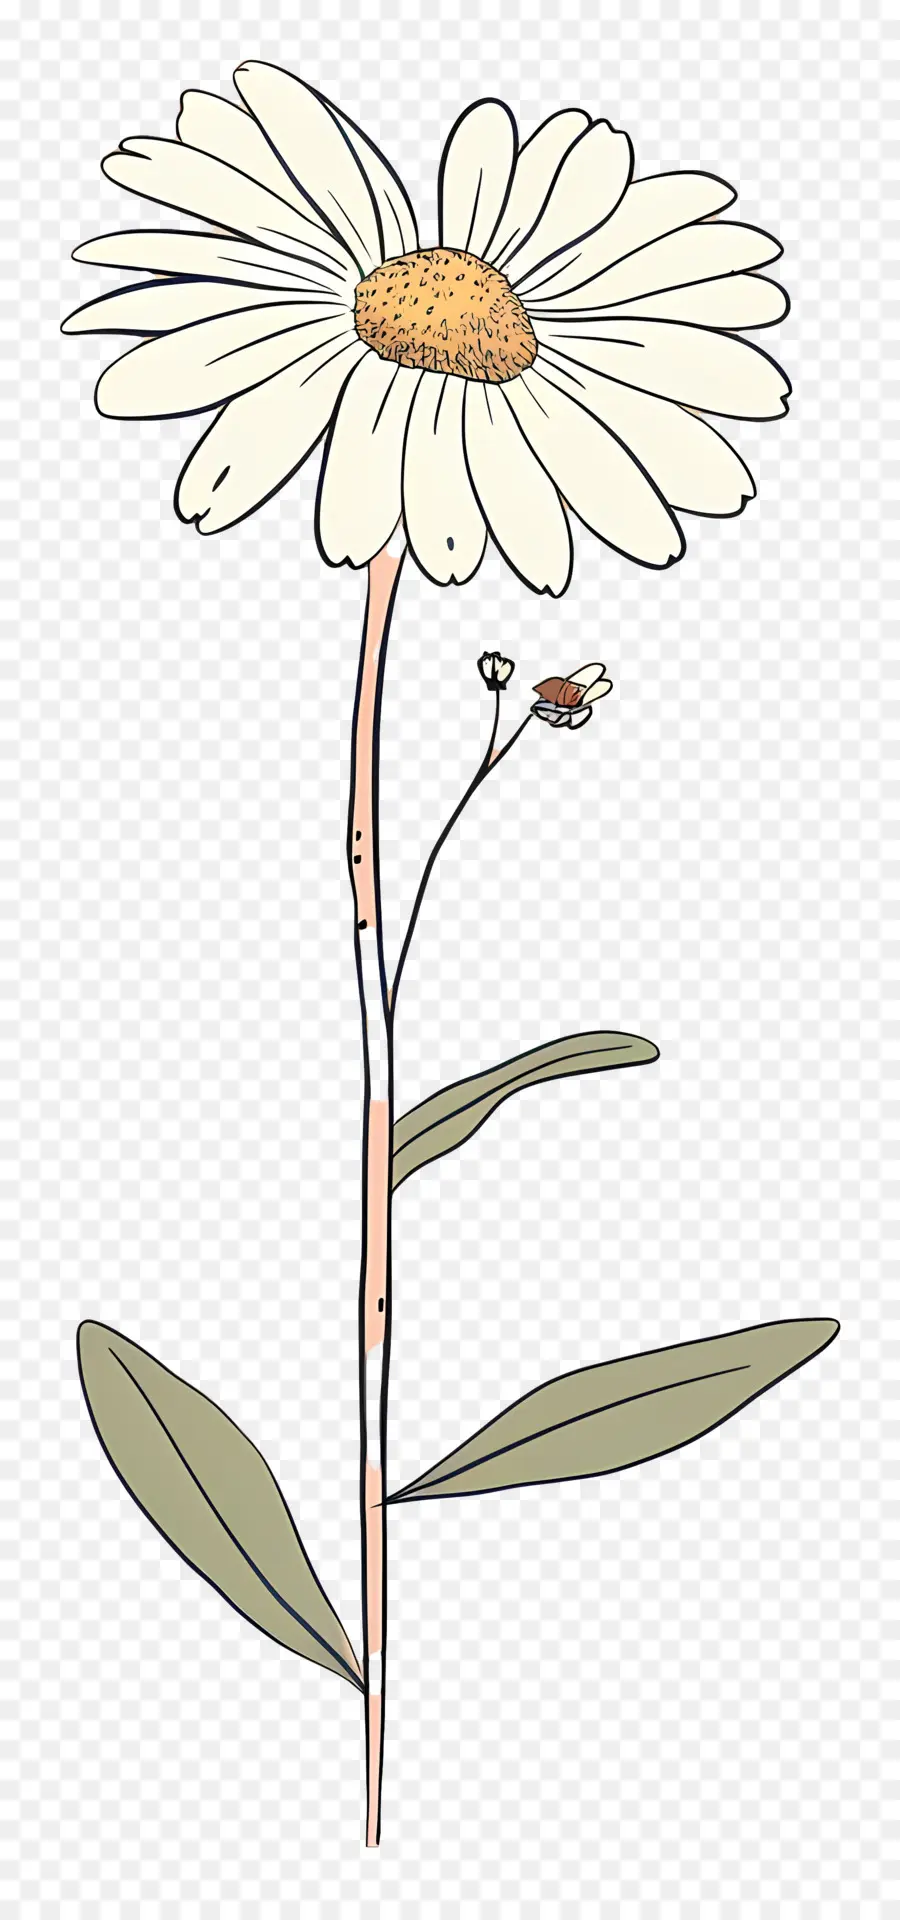 margherita - Fiore di margherita bianco dettagliato con macchie nere